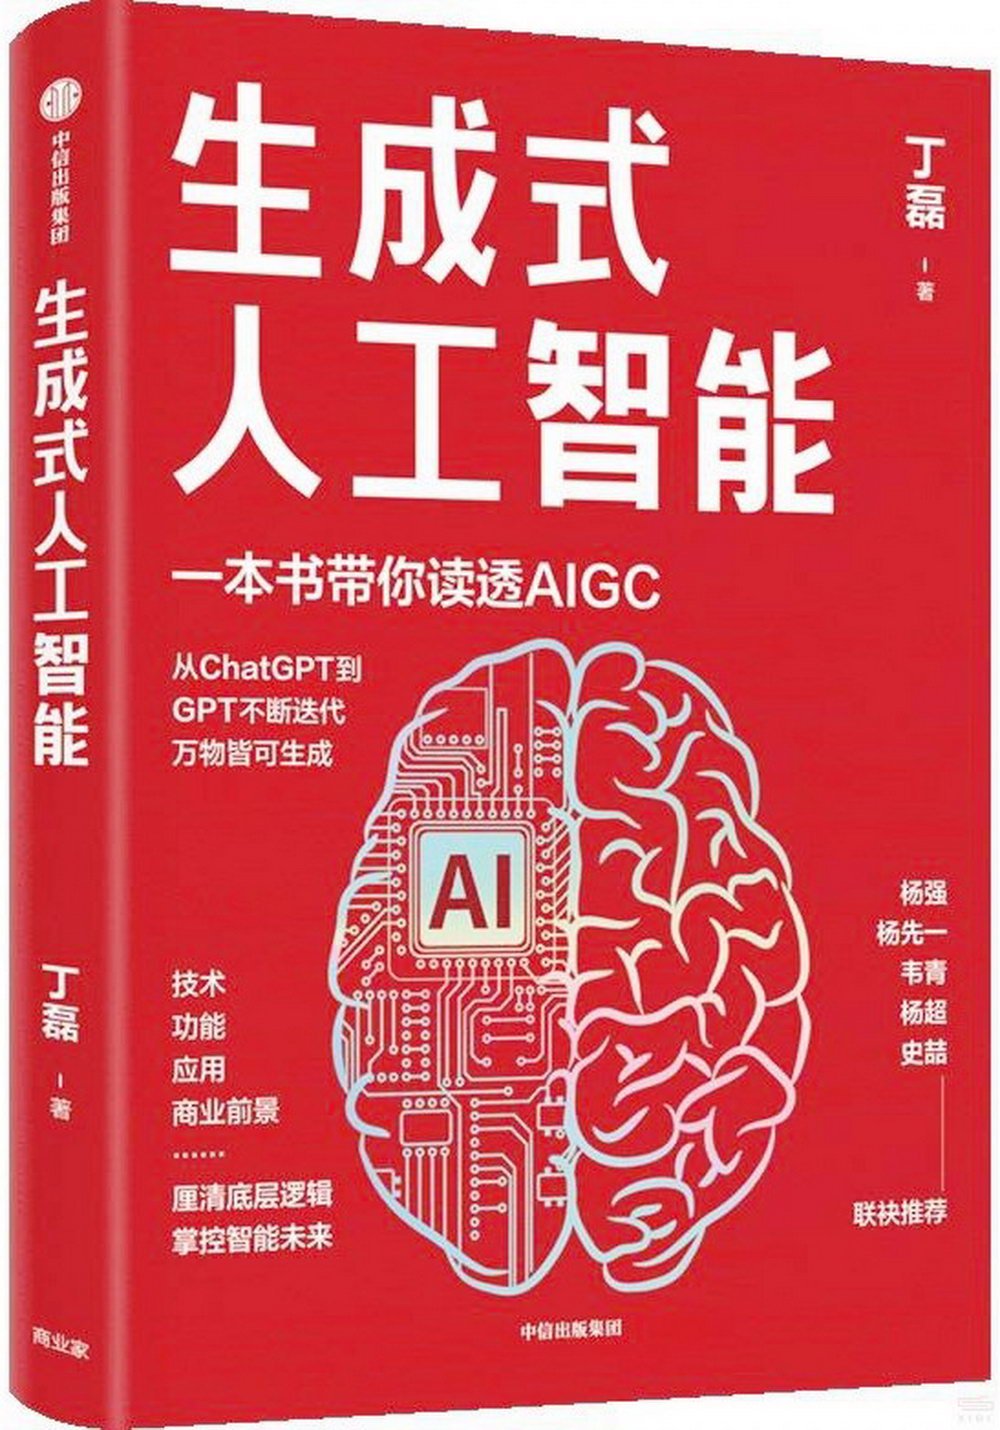 生成式人工智能：AIGC的邏輯與應用